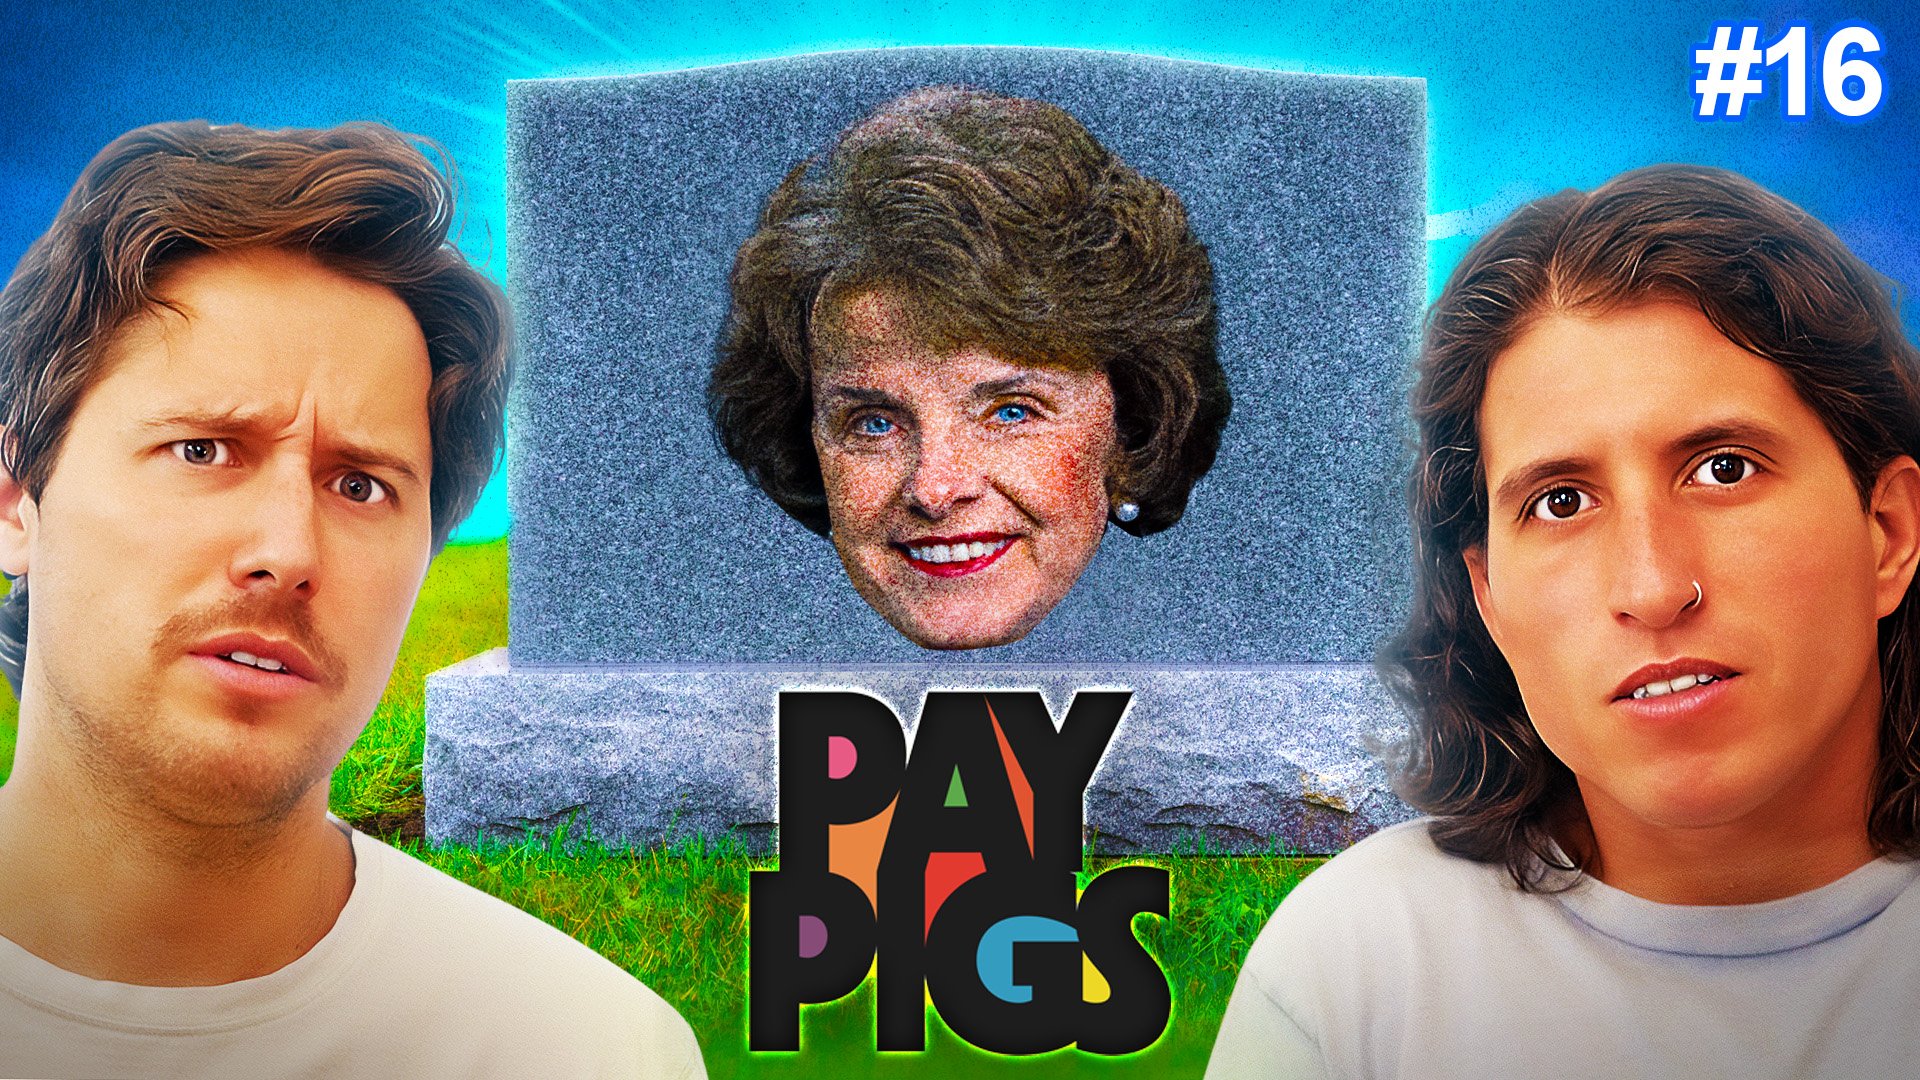 pay pigs thumbnail - ep 16 v2.jpg